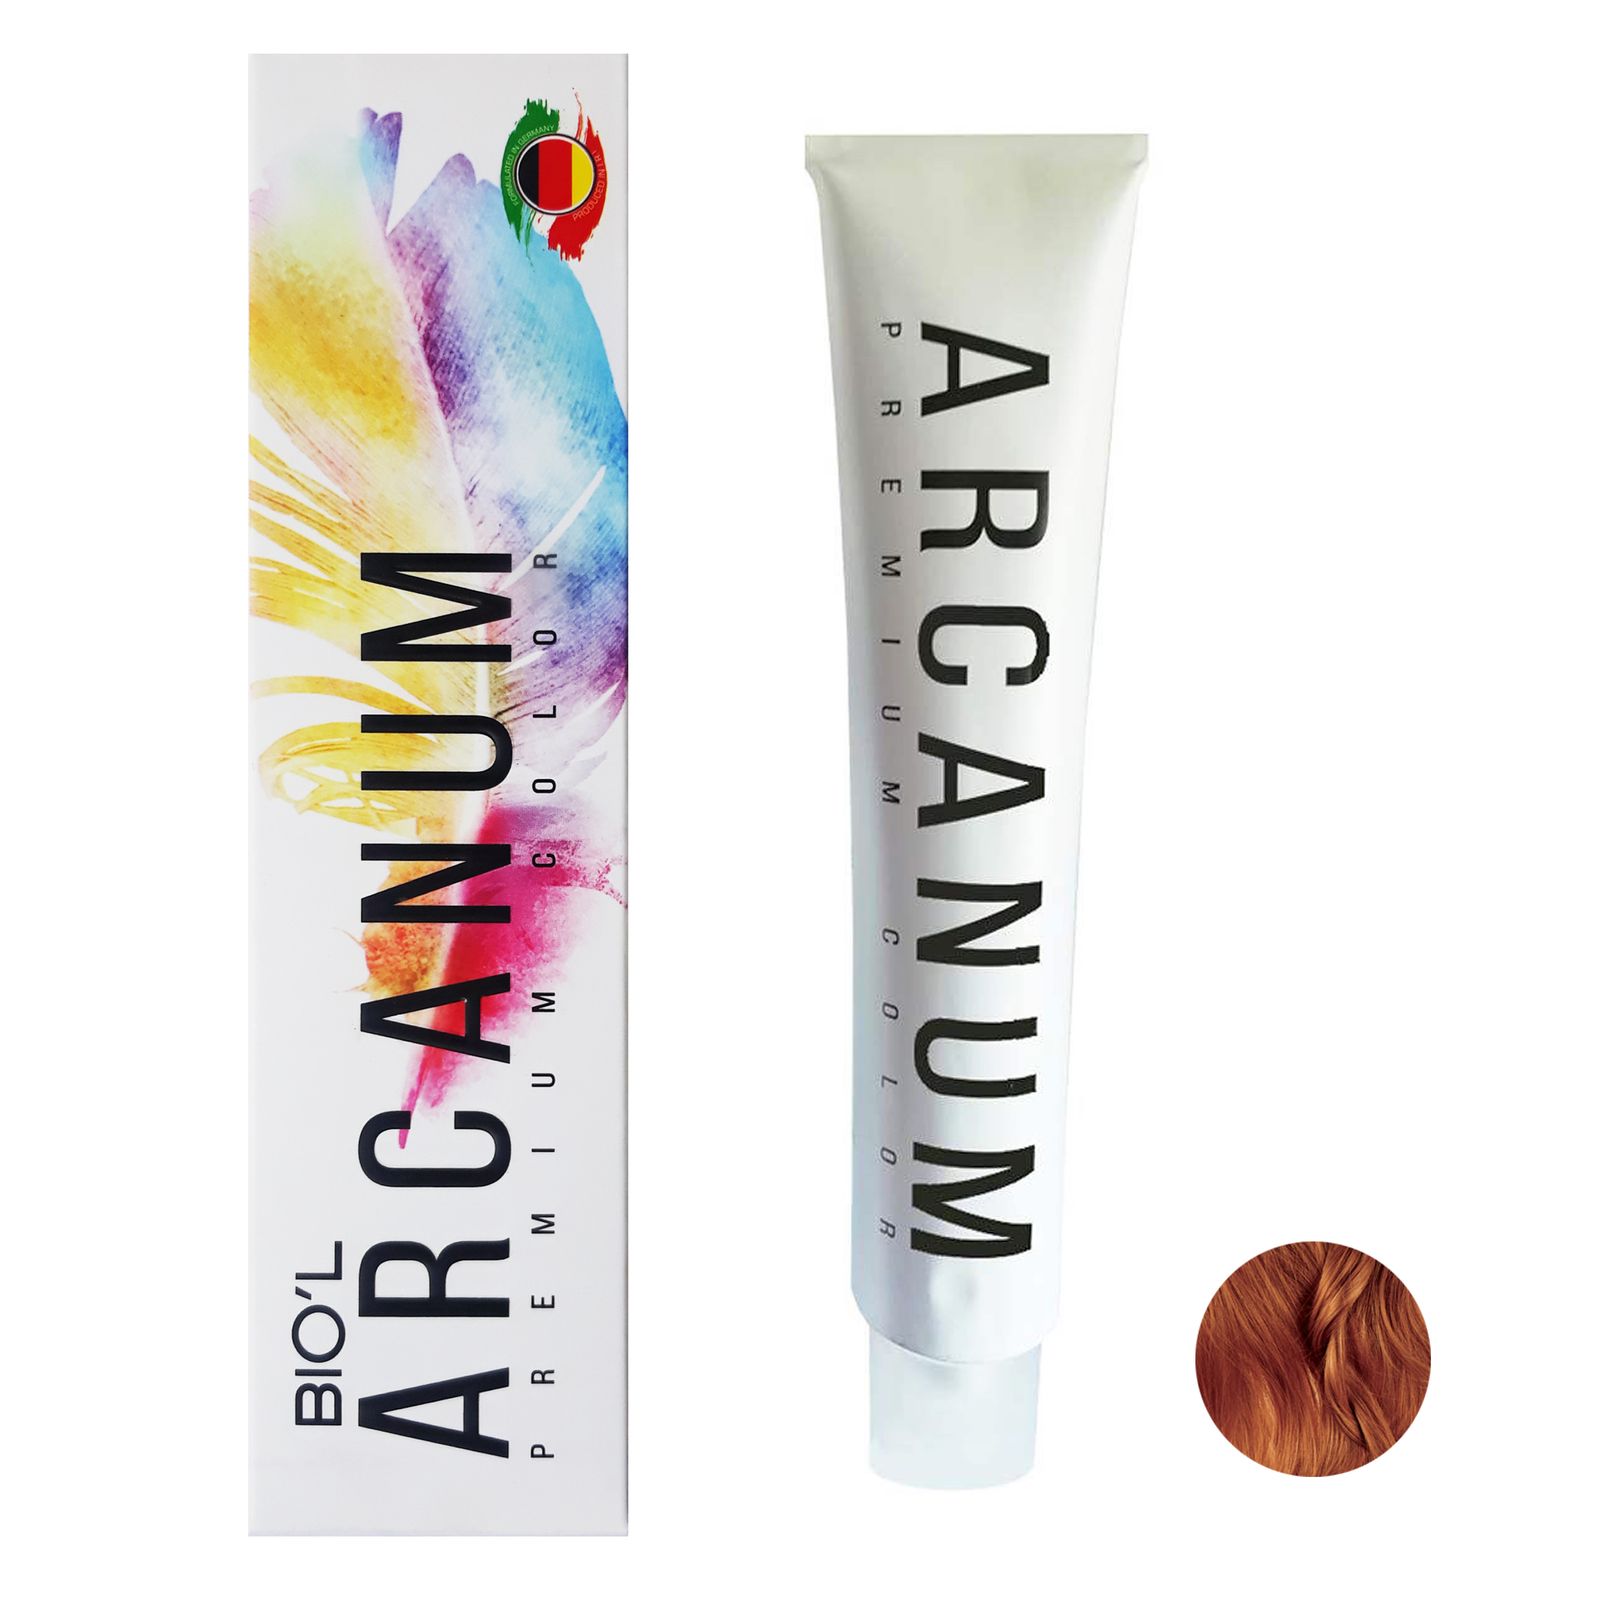  رنگ مو بیول مدل Arcanum شماره 6.84 حجم 120 میلی لیتر رنگ بلوند شکلاتی پرتغالی تیره -  - 1